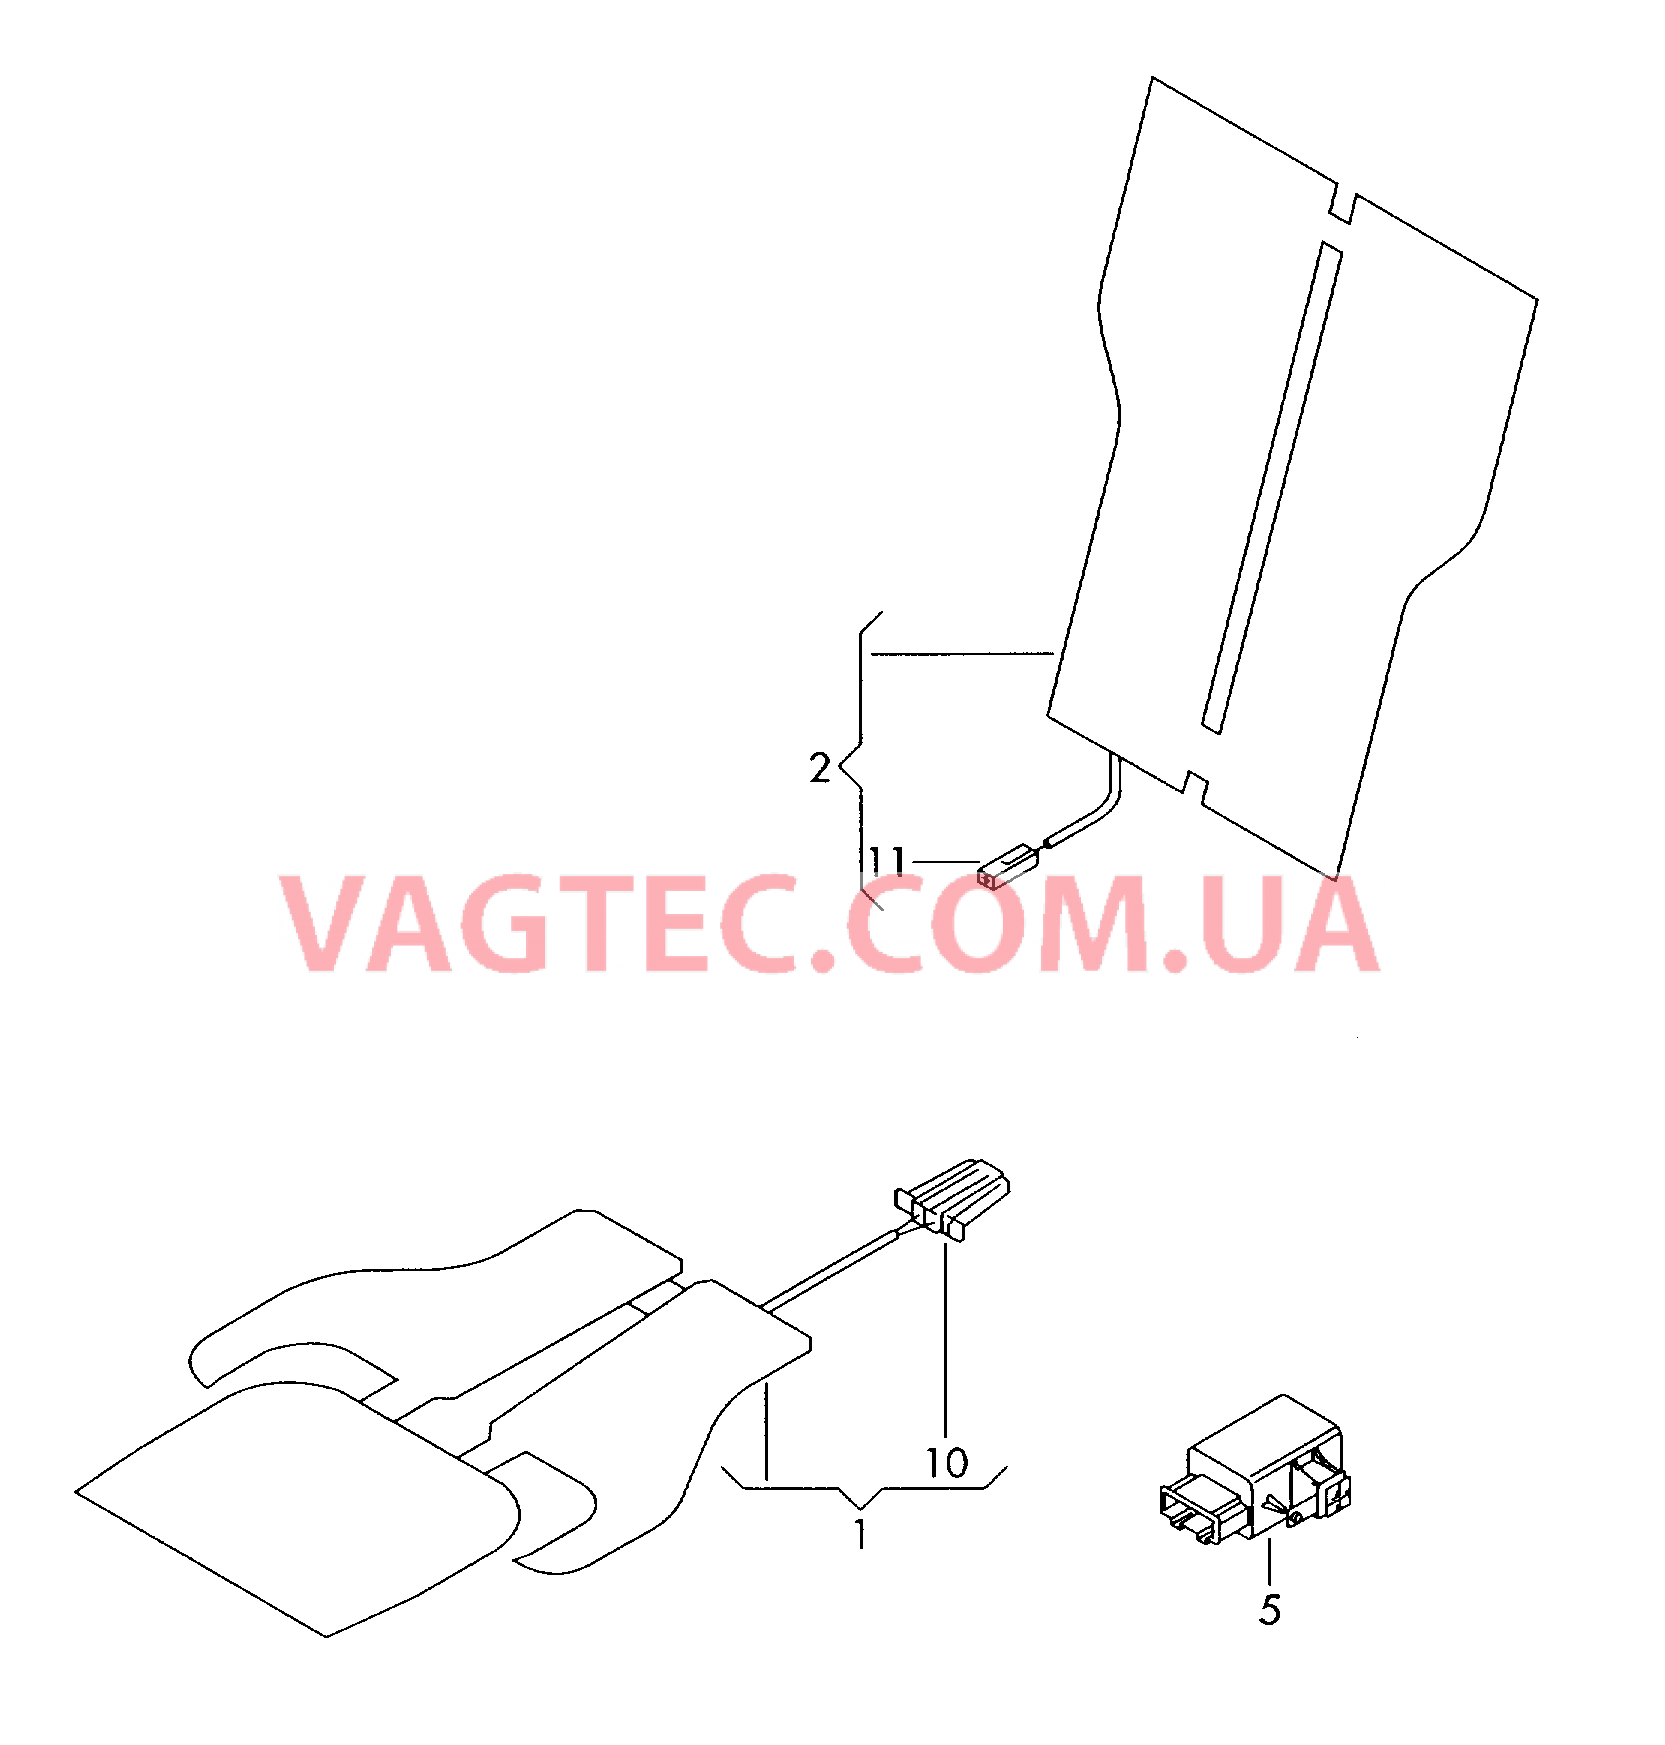 Электродетали для обогрева подушки и спинки сиденья  для VOLKSWAGEN Passat 2014-1